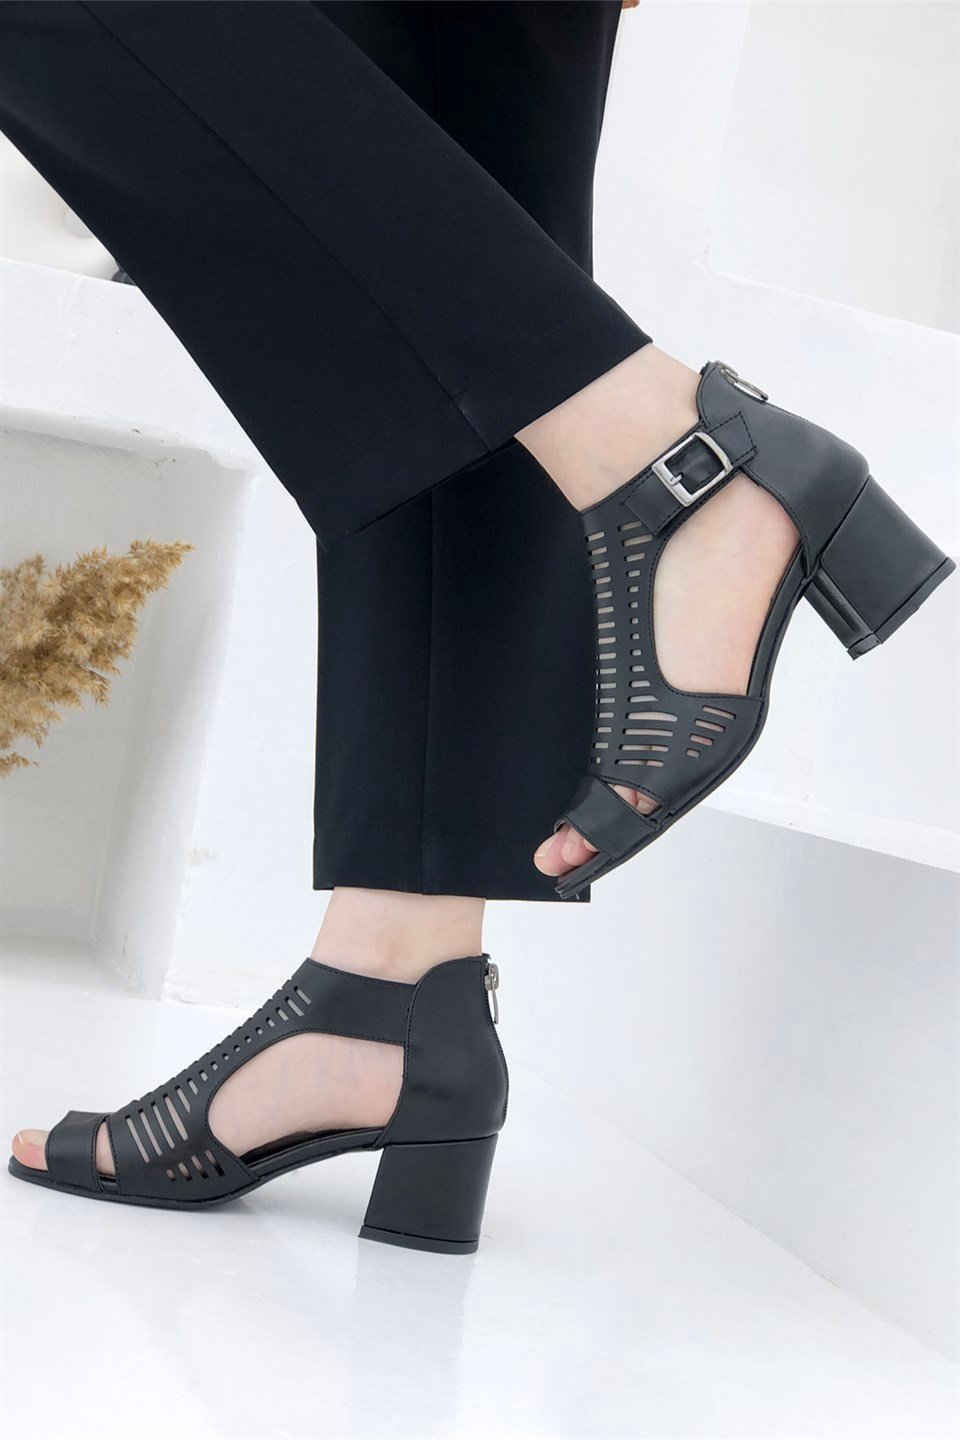 Kafes Model Tokalı ve Fermuarlı Kadın Ayakkabı Siyah 111 Conforcity |  Mybella Shoes